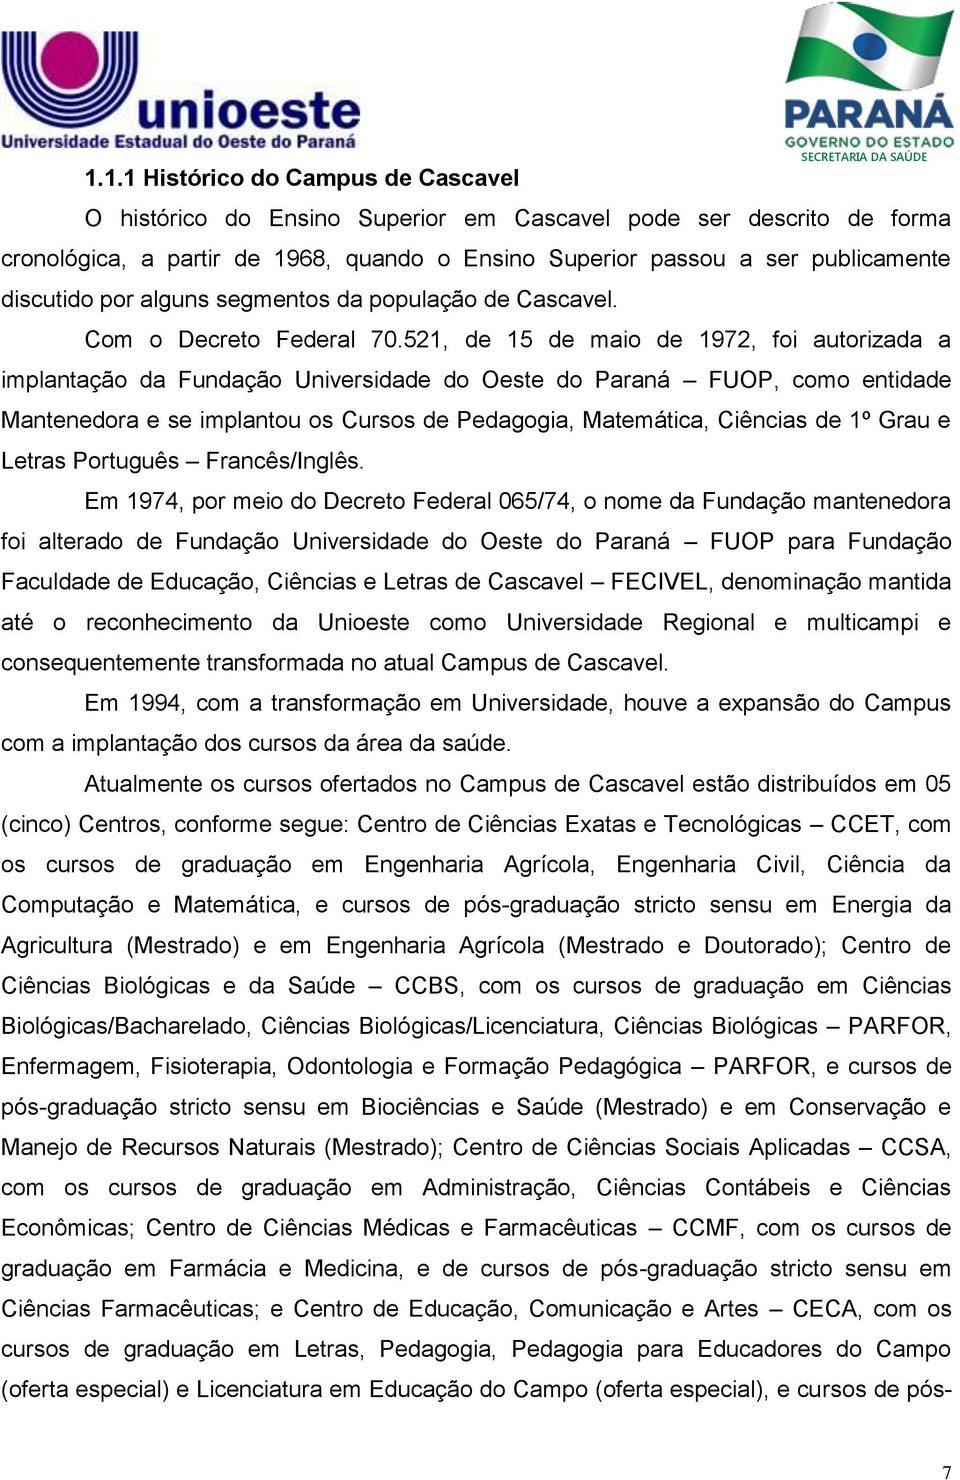 521, de 15 de maio de 1972, foi autorizada a implantação da Fundação Universidade do Oeste do Paraná FUOP, como entidade Mantenedora e se implantou os Cursos de Pedagogia, Matemática, Ciências de 1º